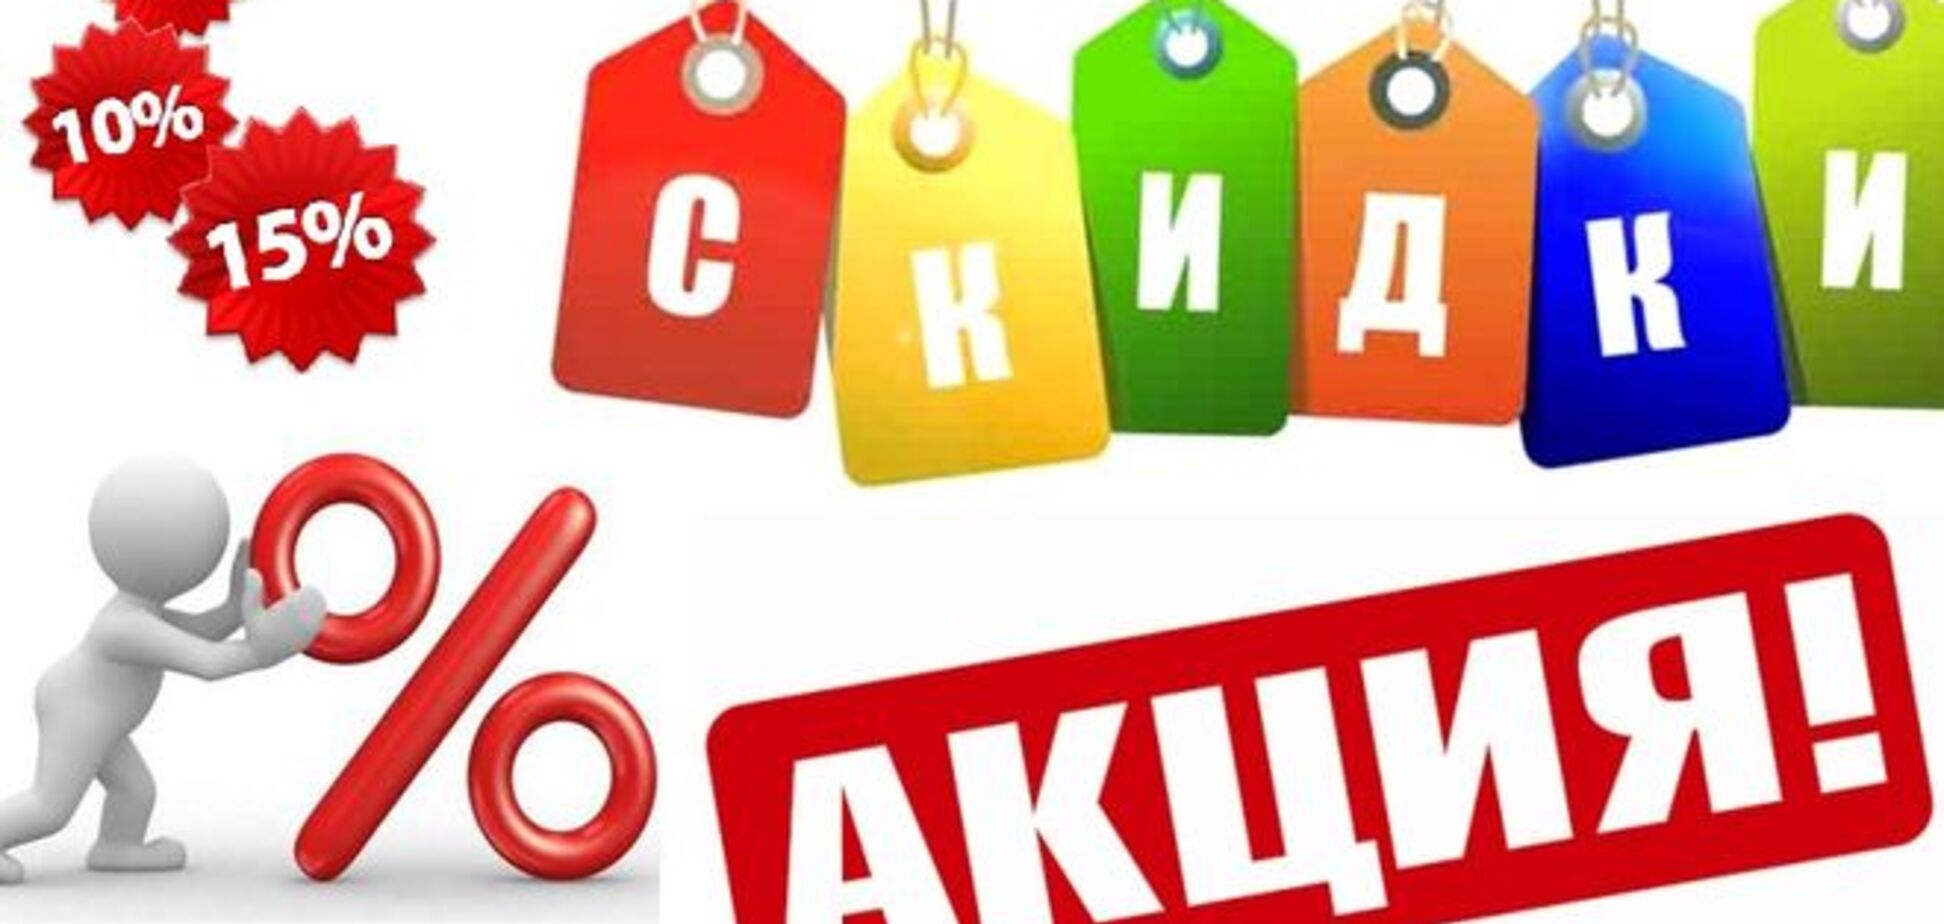 Акции и спецпредложения в украинских магазинах. В чем подвох?